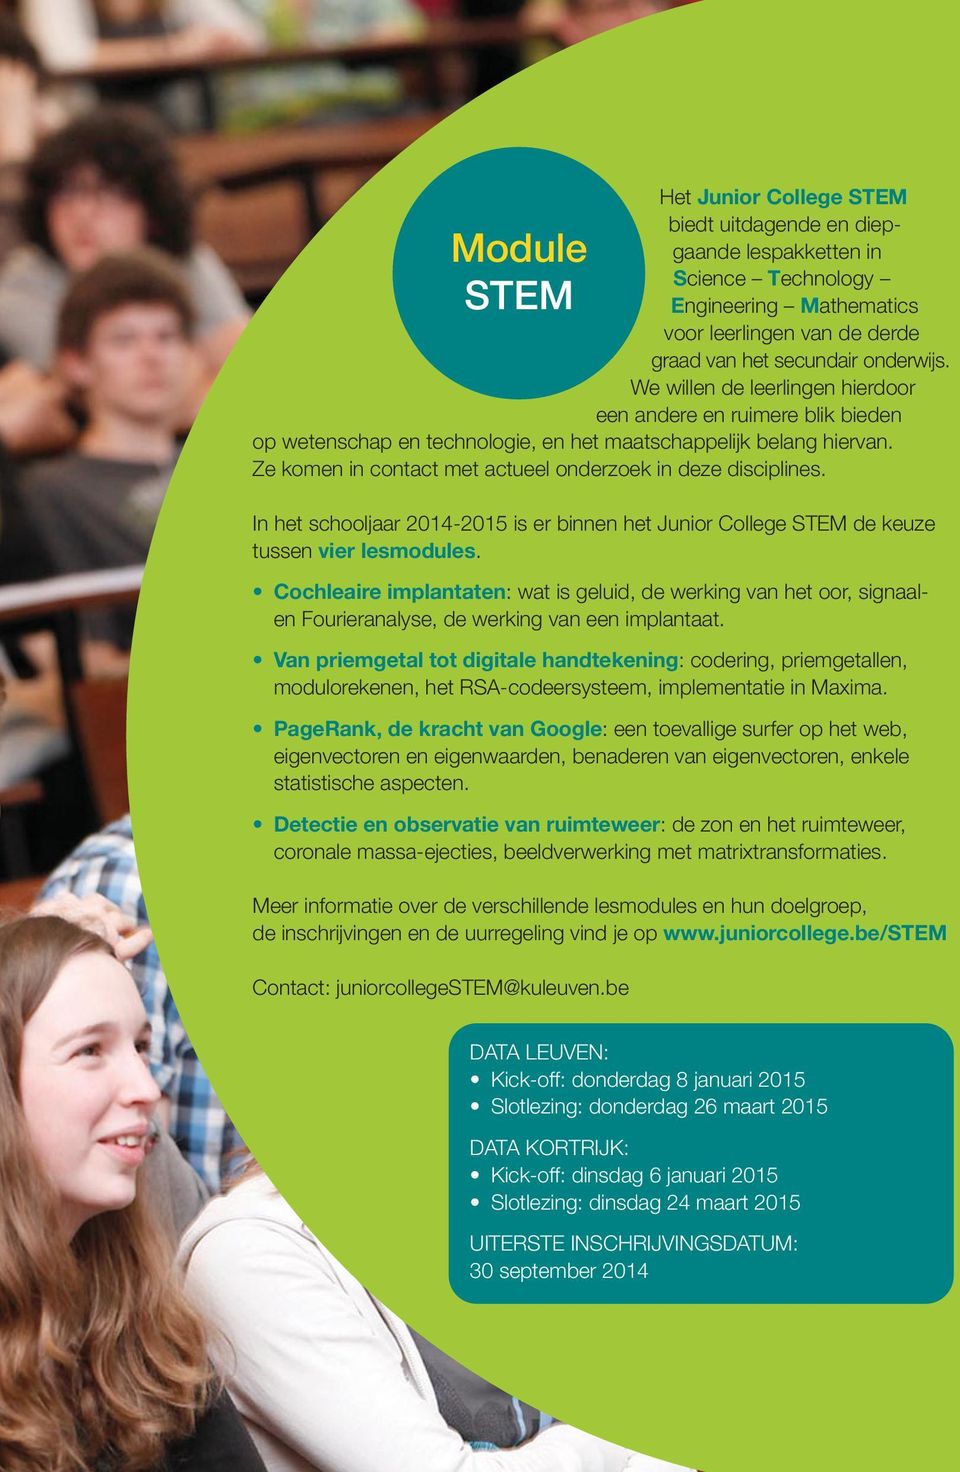 In het schooljaar 2014-2015 is er binnen het Junior College STEM de keuze tussen vier lesmodules.